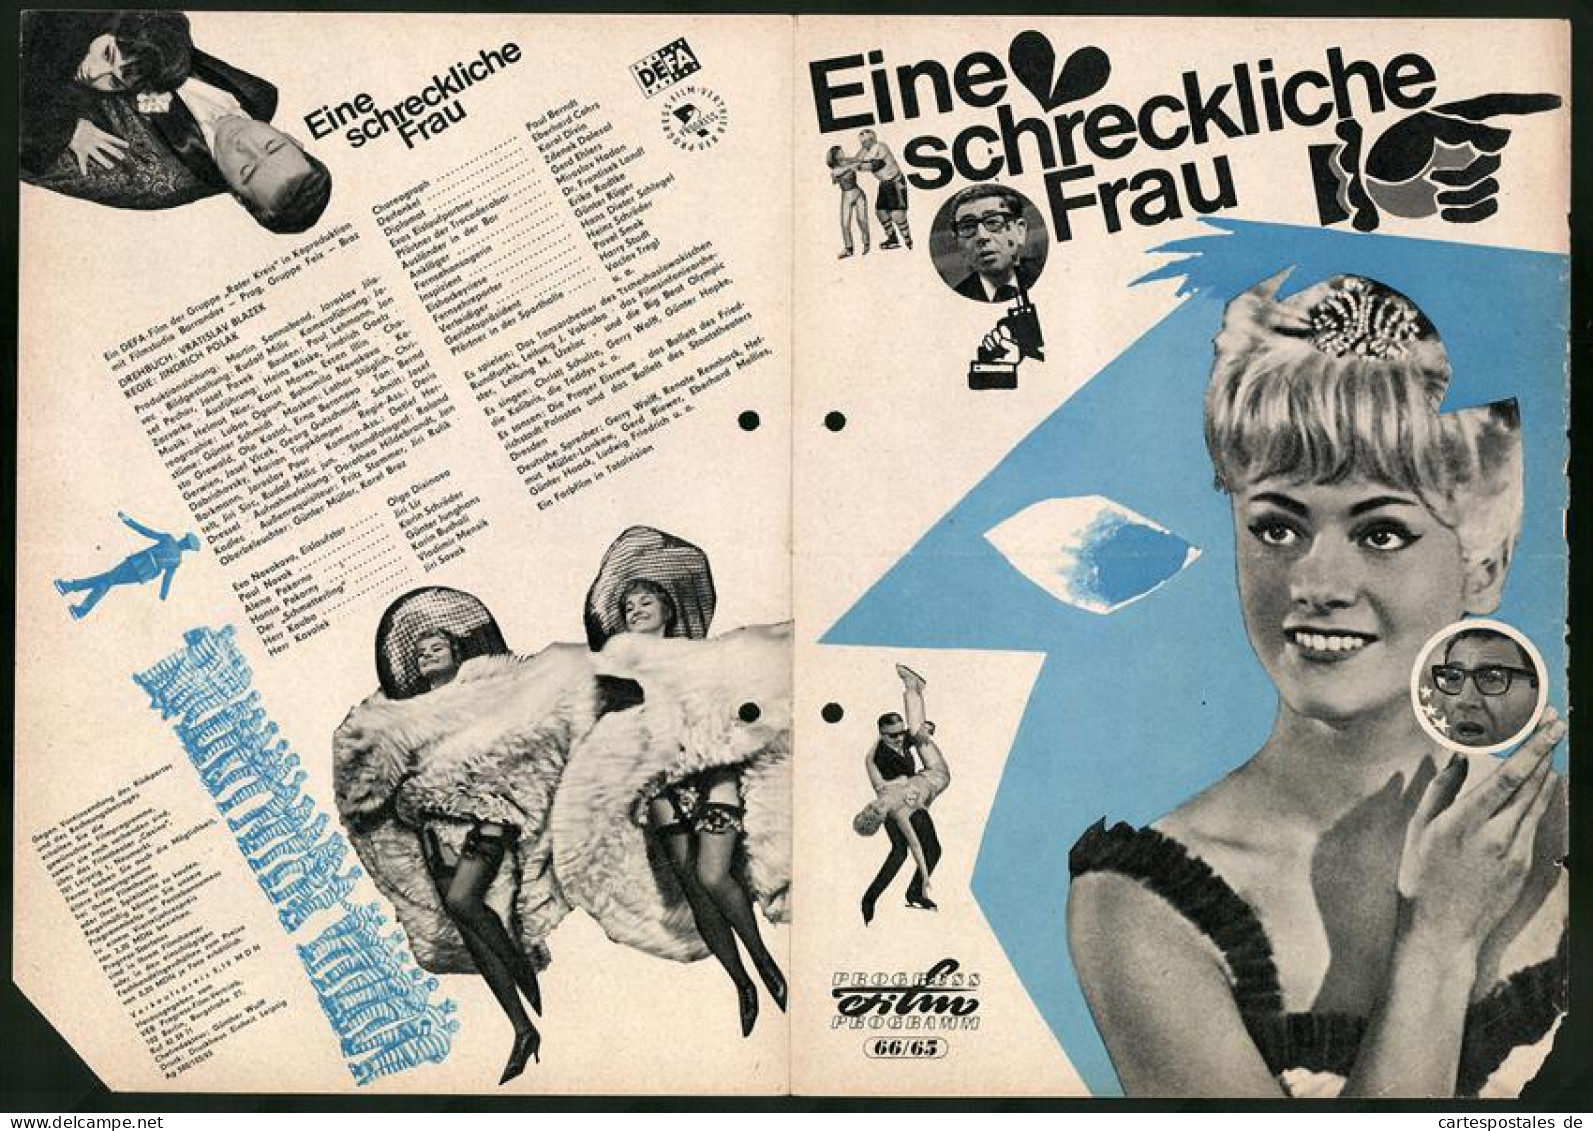 Filmprogramm PFP Nr. 66 /65, Eine Schreckliche Frau, Paul Berndt, Eberhard Cohrs, Regie: Jindrich Polak  - Riviste